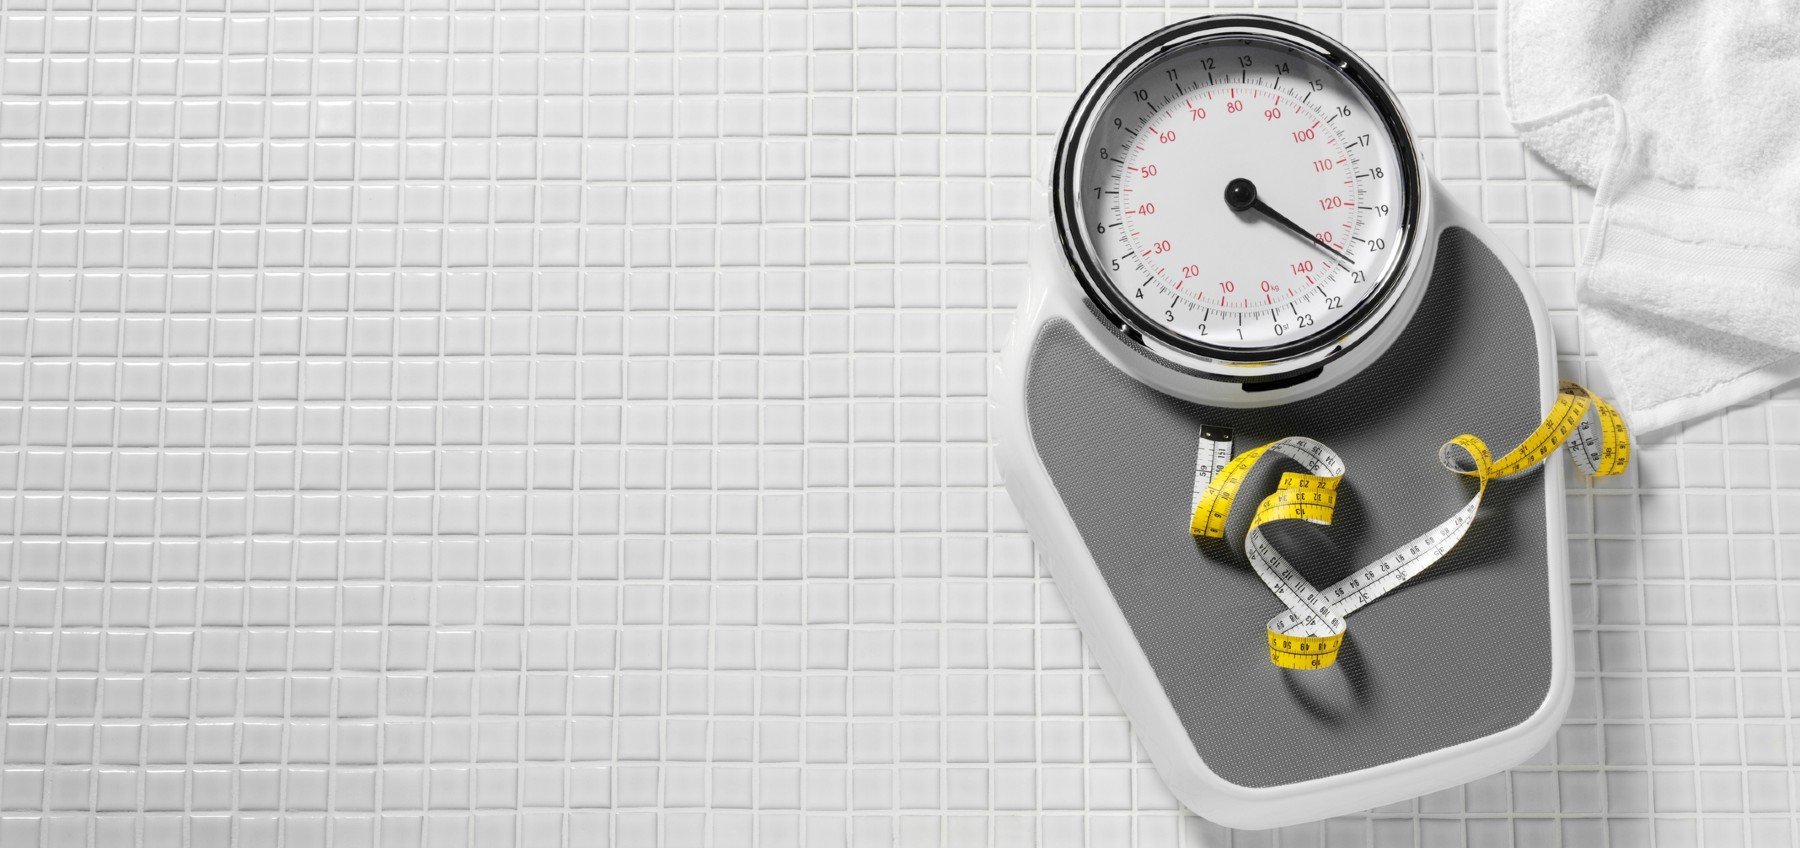 Što je važnije za gubitak kilograma – tjelovježba ili prehrana?